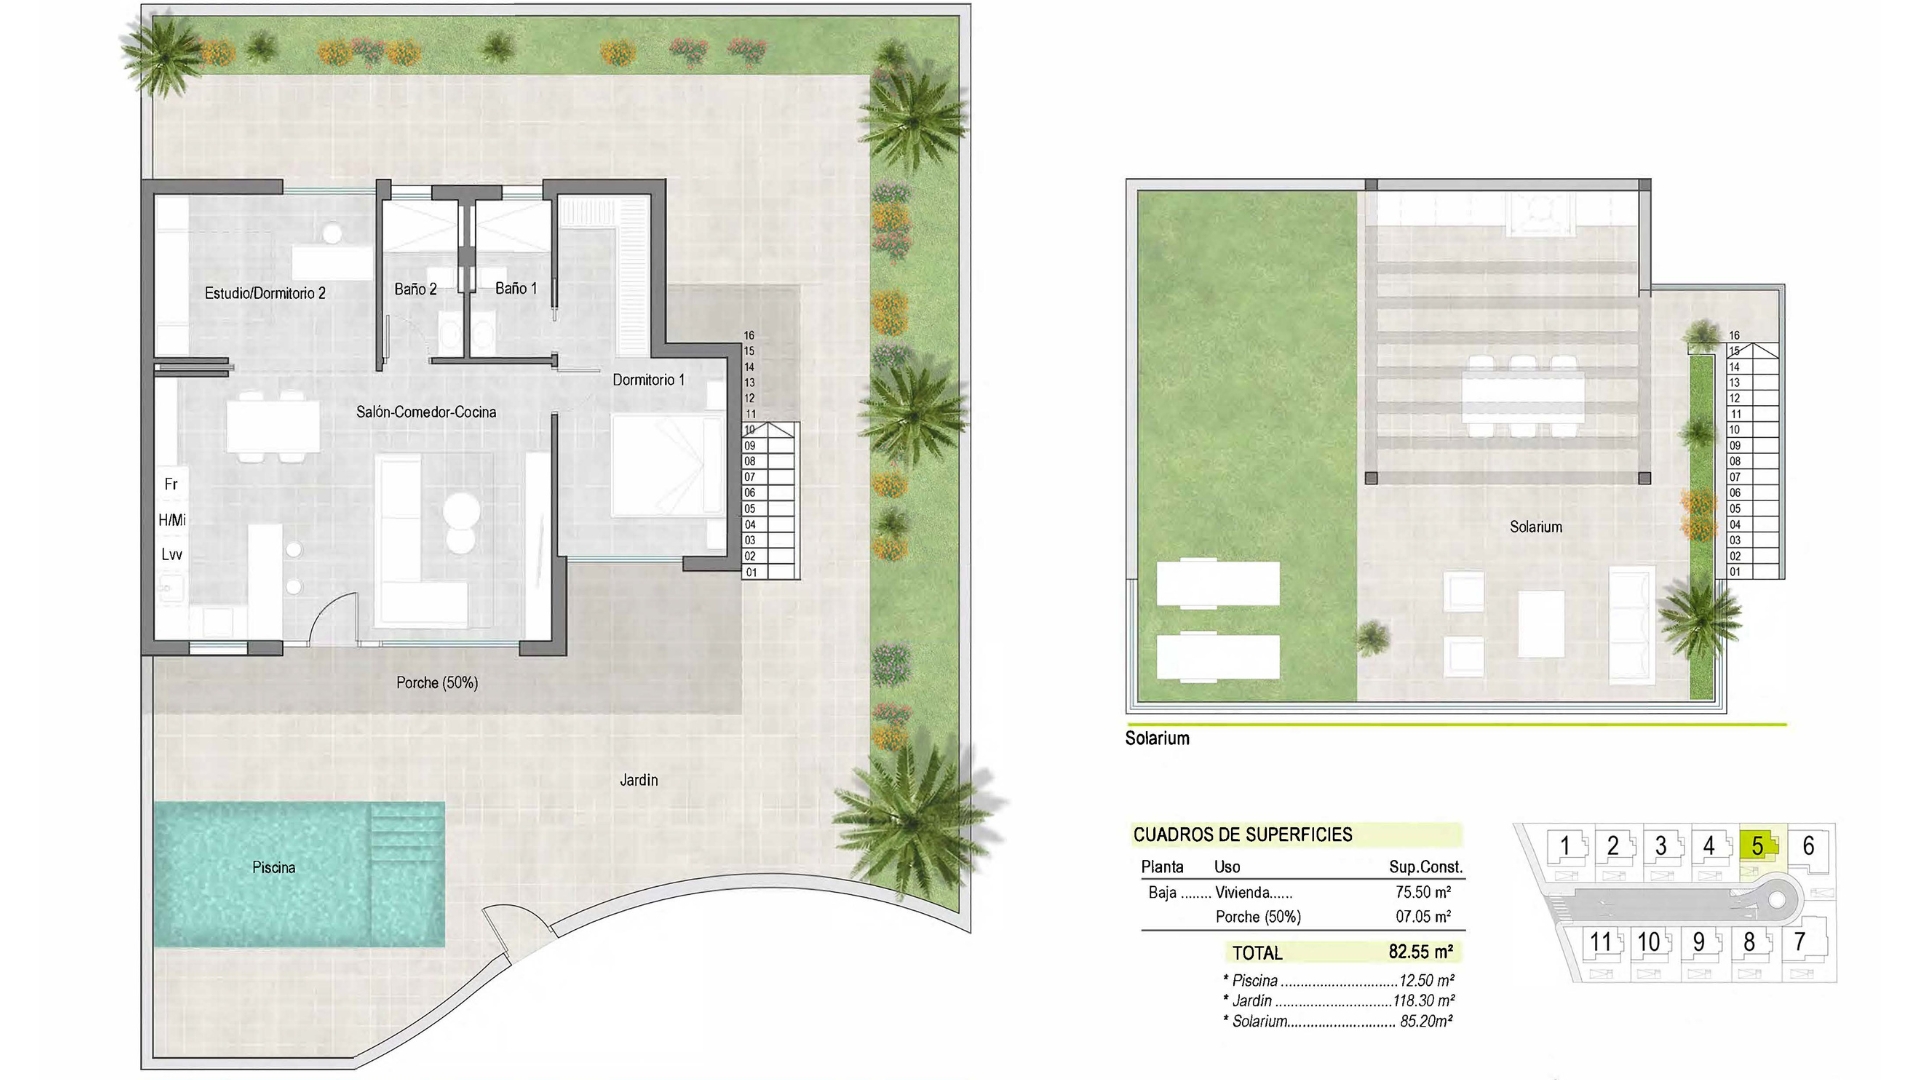 Floor plan for Villa ref 3919 for sale in Condado De Alhama Spain - Quality Homes Costa Cálida